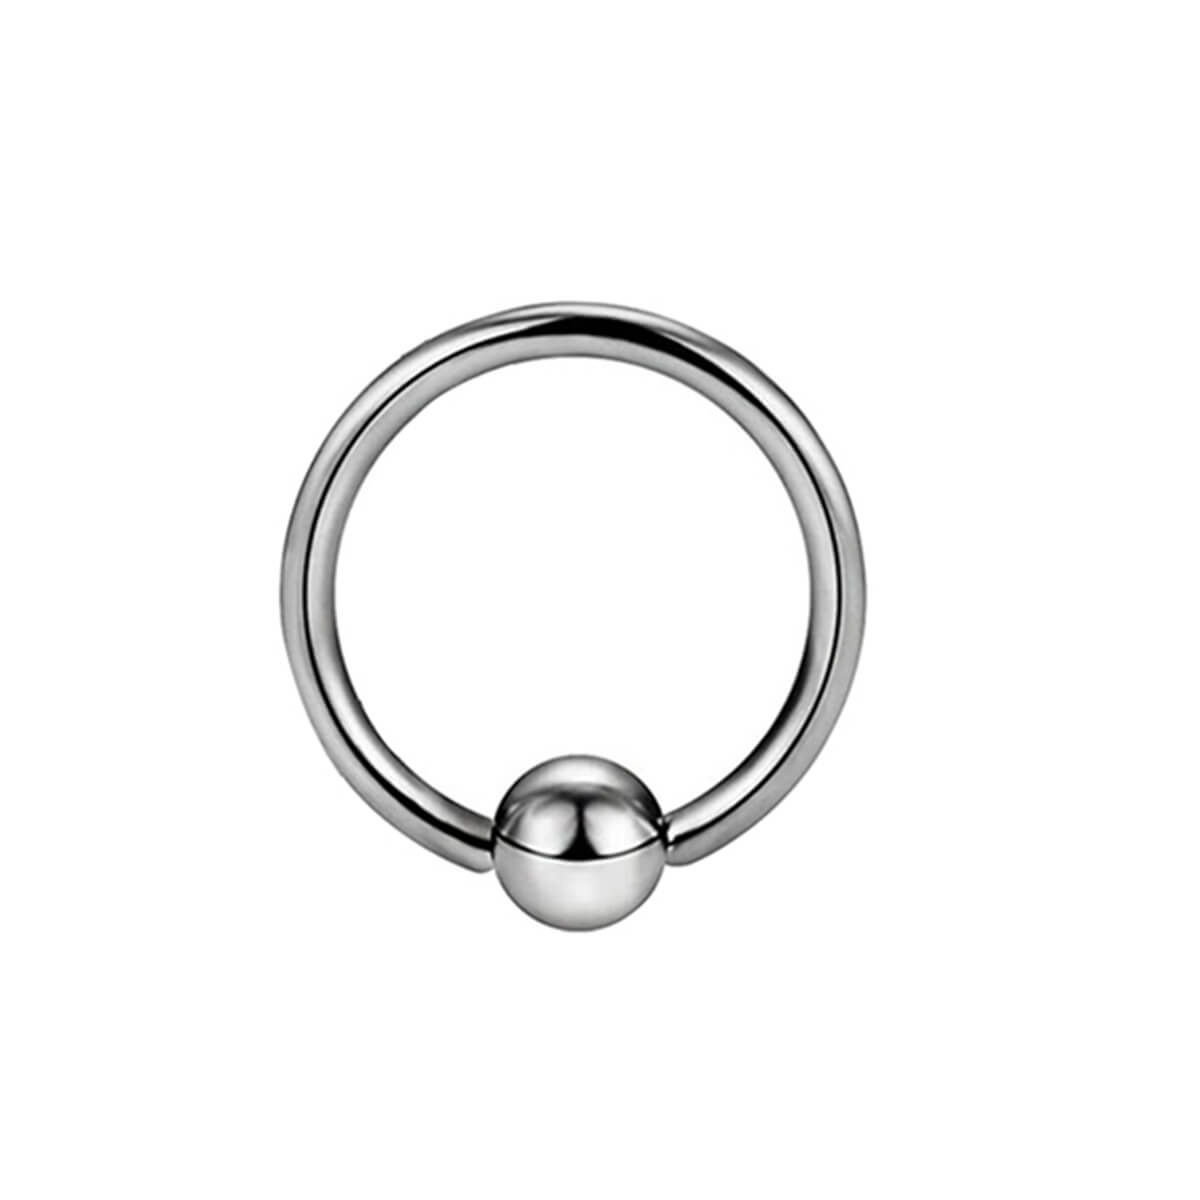 Piercing ring 0.8mm (Titanium G23)